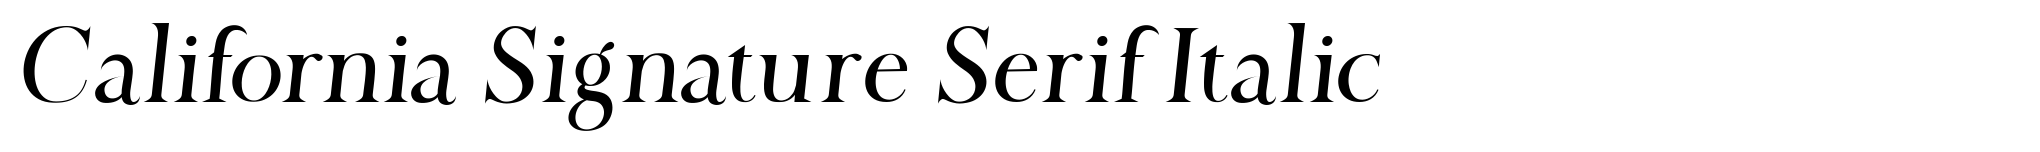 California Signature Serif Italic image